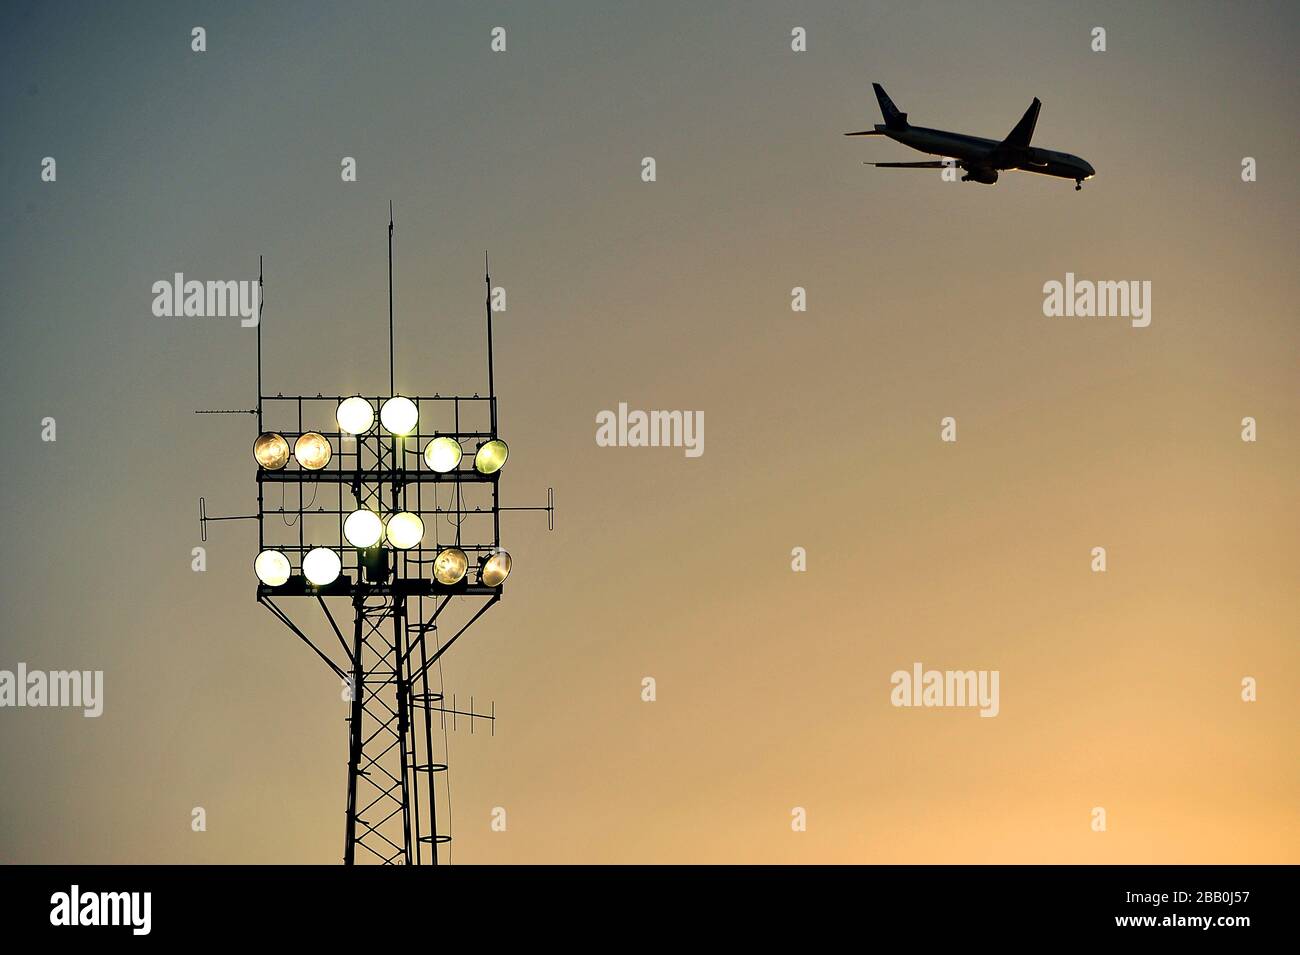 Un avion fait son chemin au-dessus de Griffin Park en direction de Heathrow alors que le soleil se couche. Banque D'Images